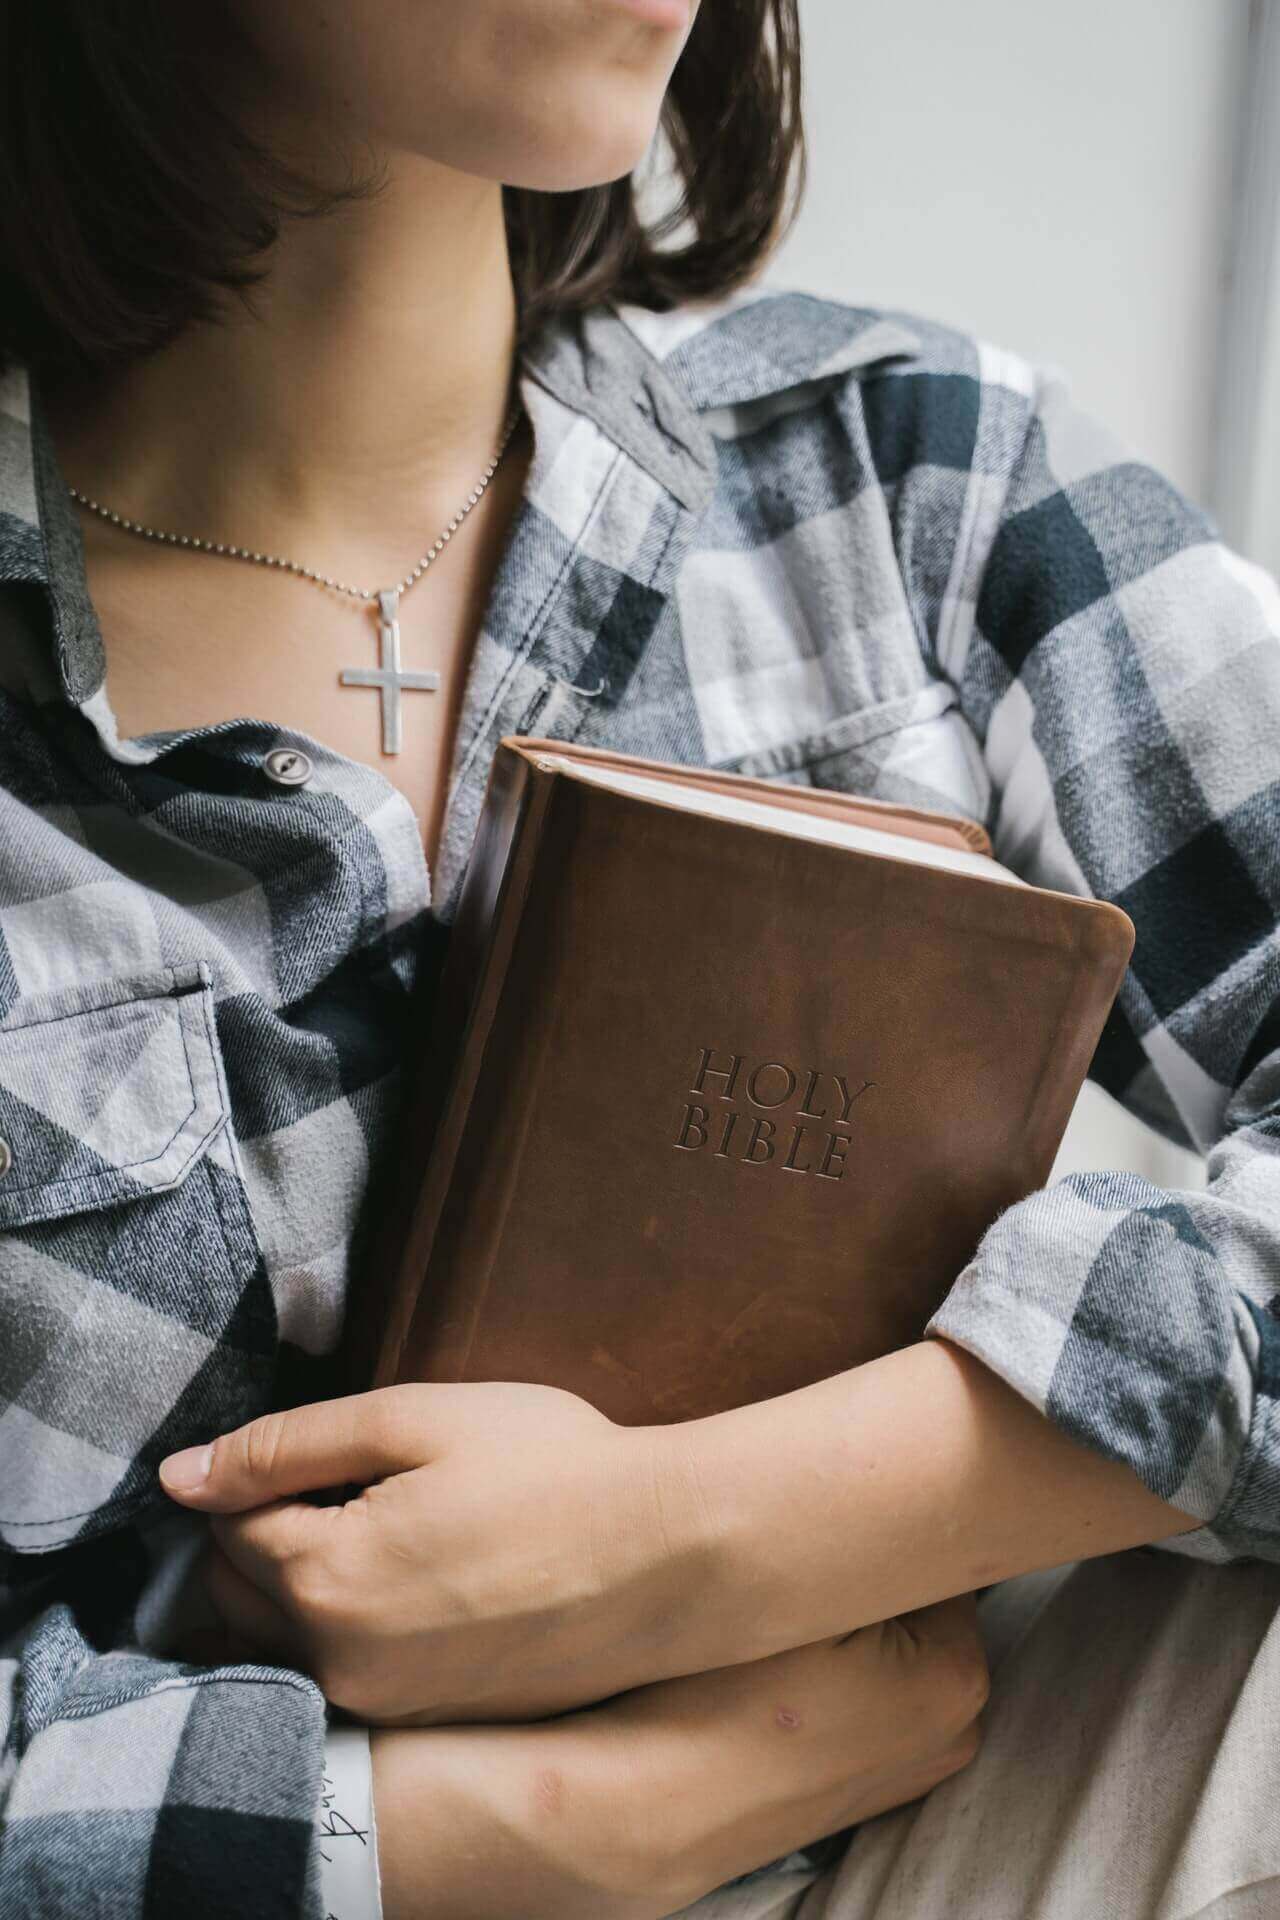 Guia da Bíblia - Como ler a Bíblia